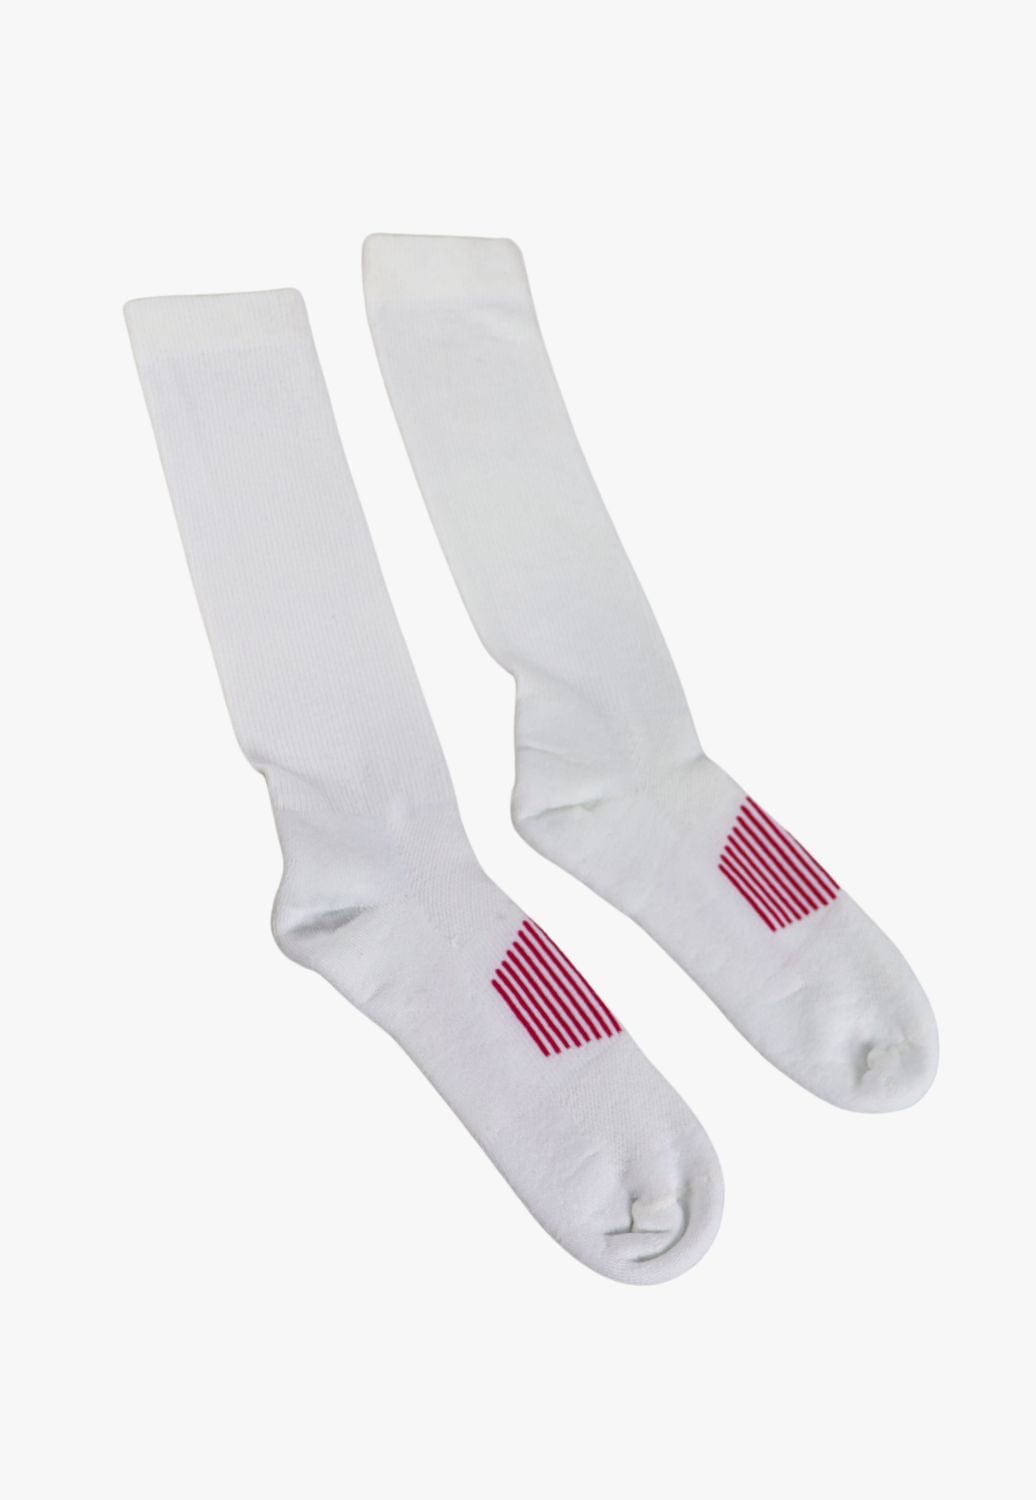 Wrangler ACCESSORIES-Socks MEDIUM / White Wrangler Womens Socks - 1 Pack